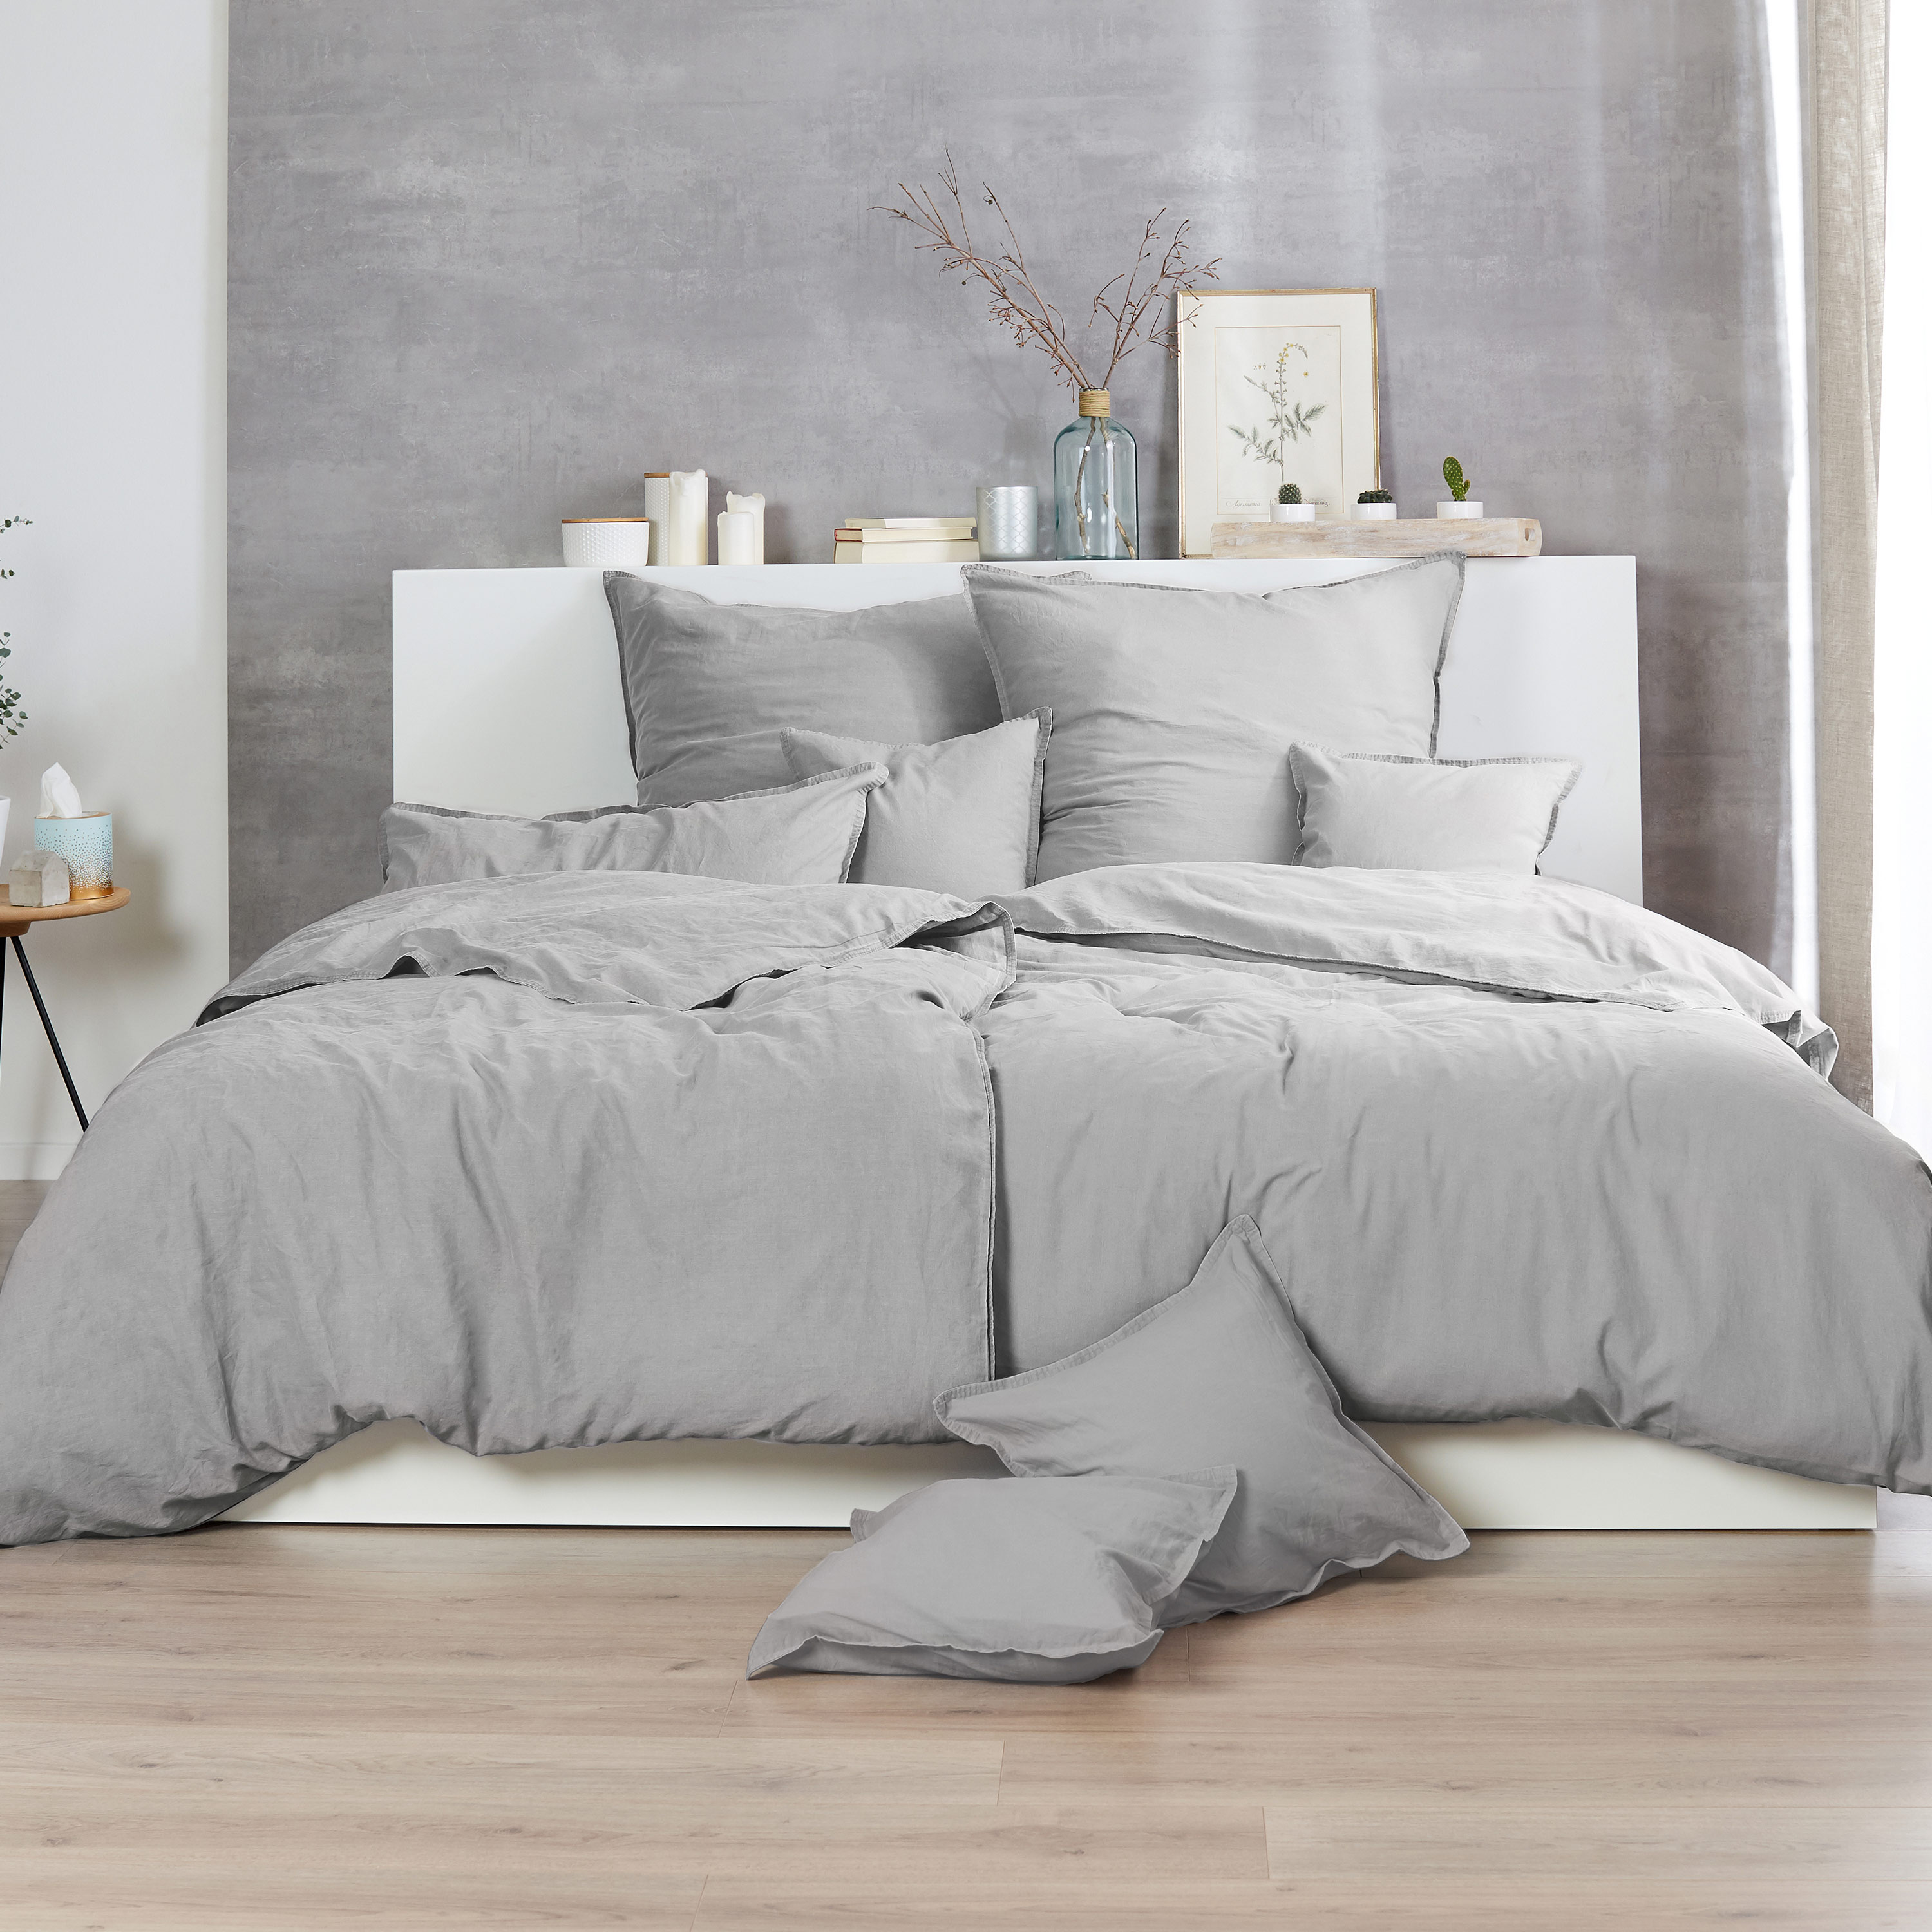 Traumhaft gut schlafen – Stone-Washed-Bettwäsche, 100% Baumwolle, in versch. Farben und Größen